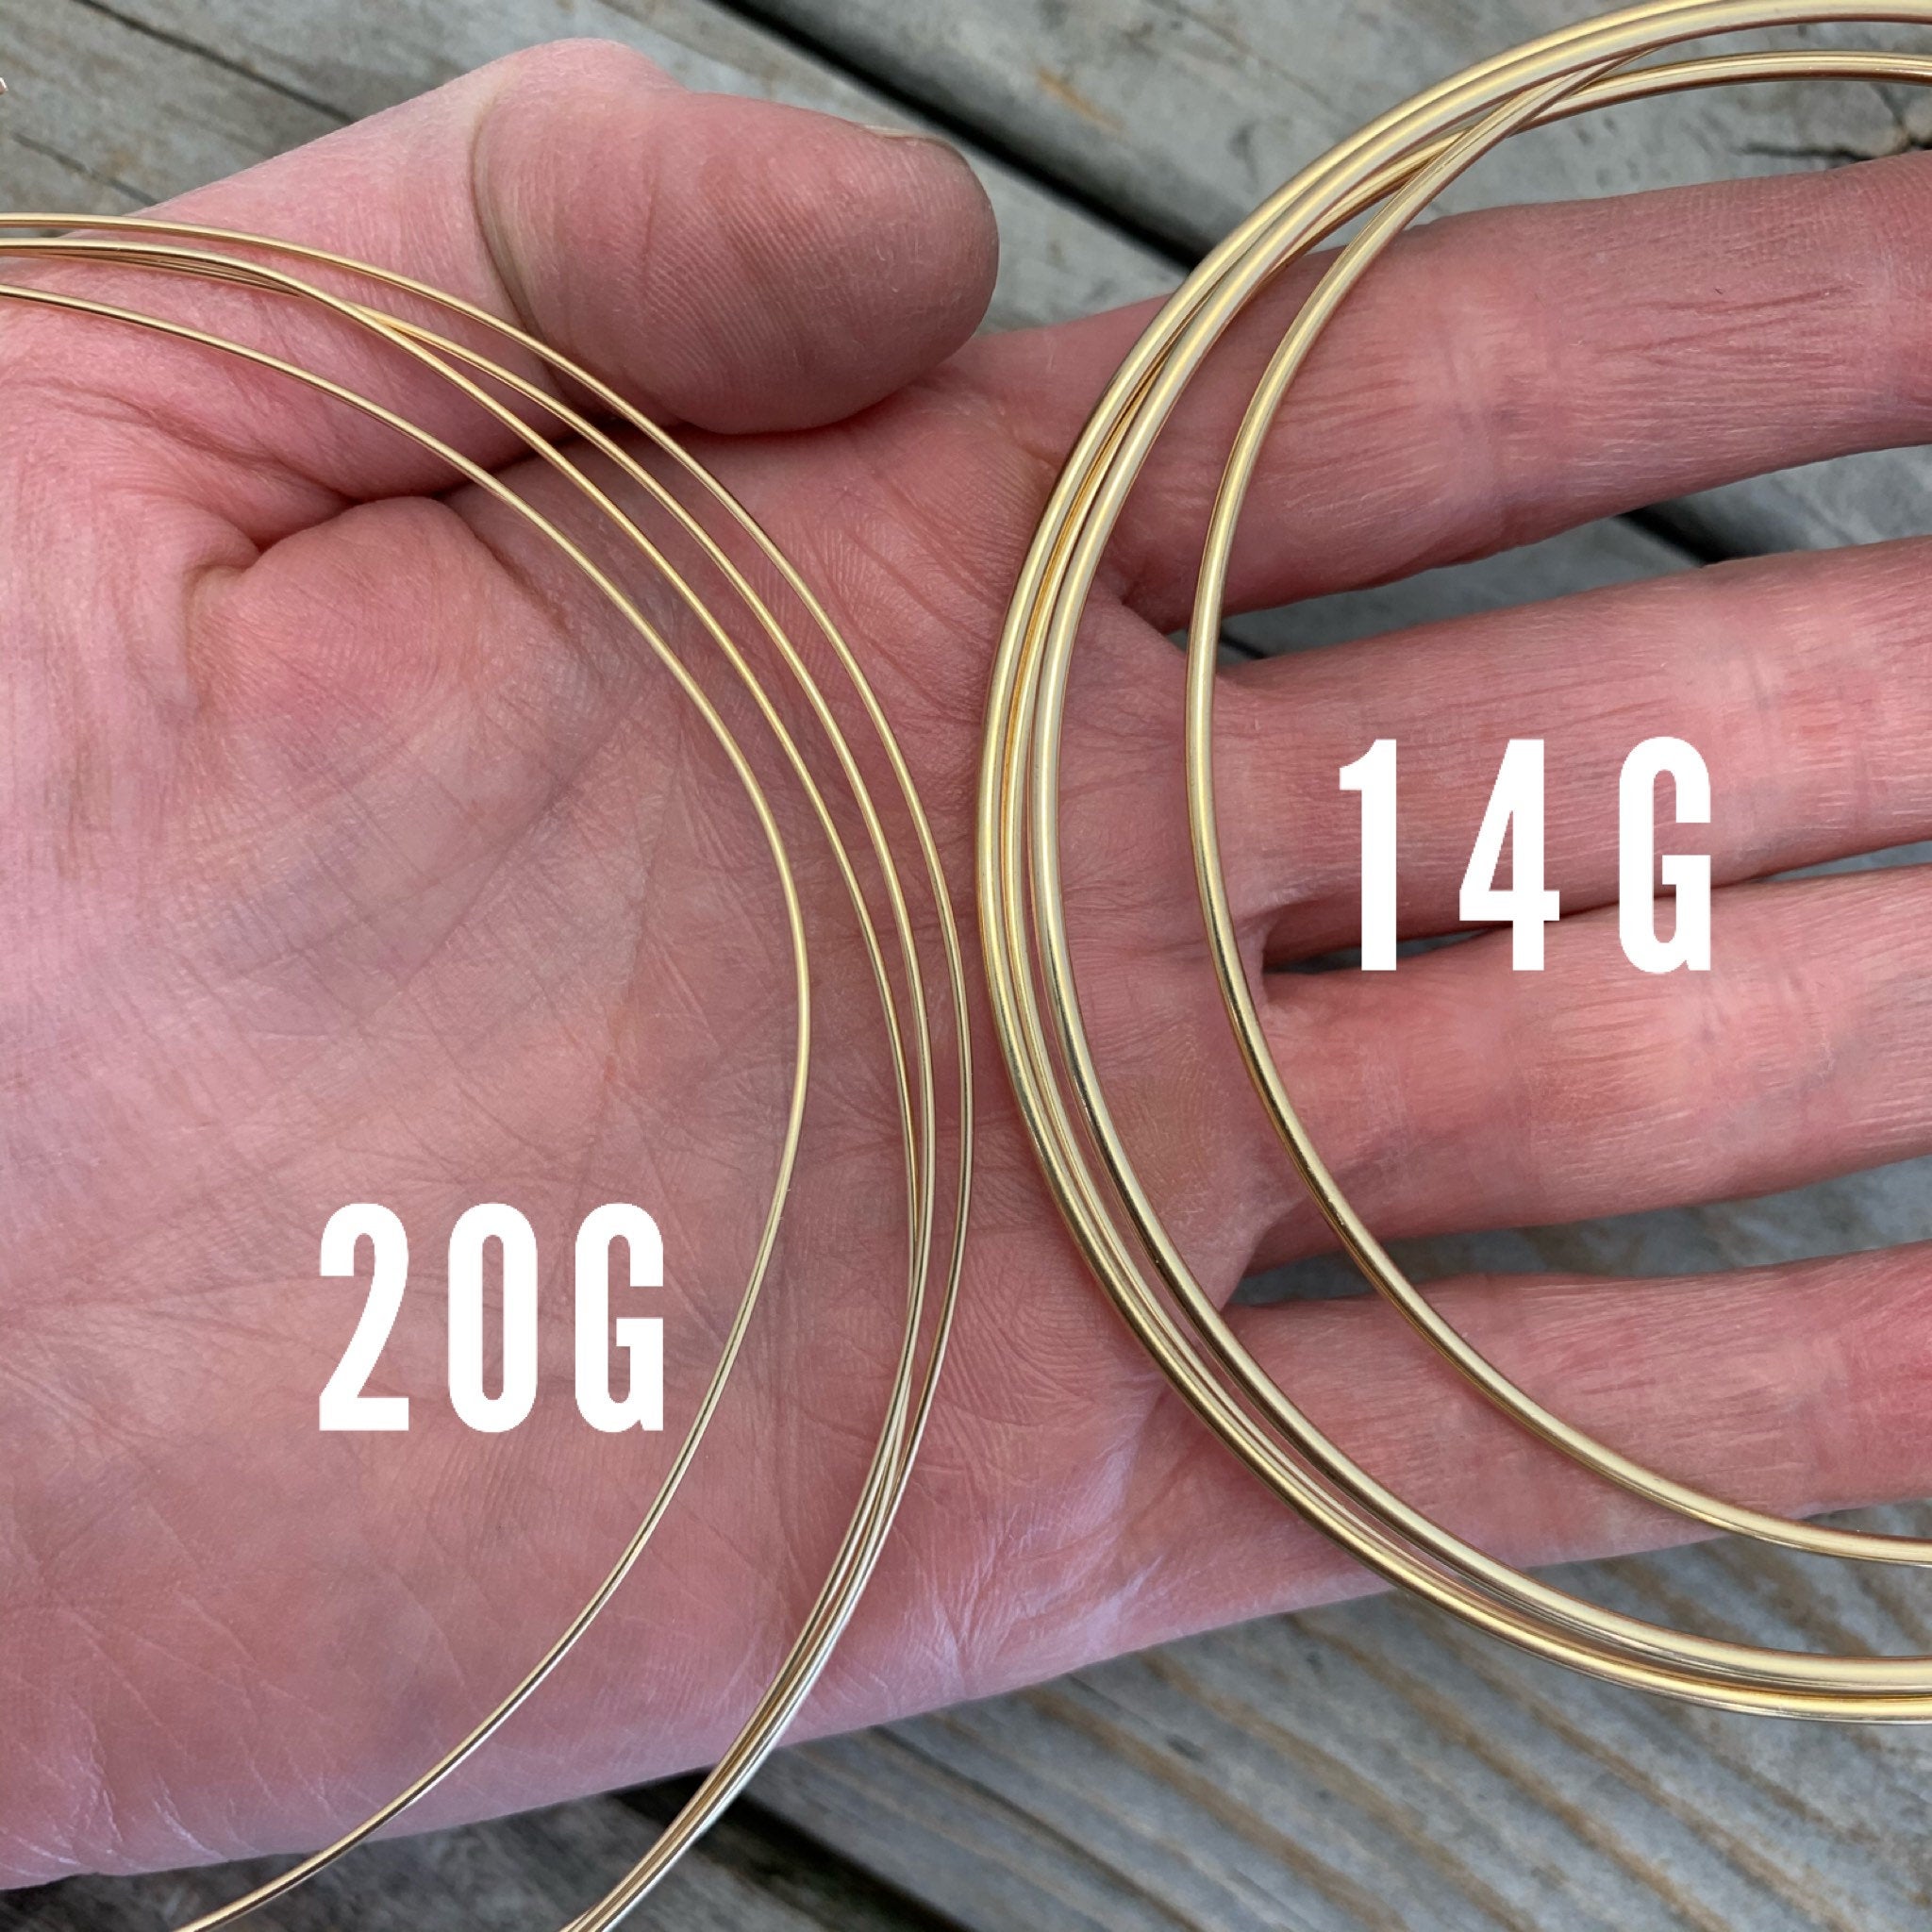 18 Gauge Half Round Dead Soft 14/20 Gold Filled Wire: Wire Jewelry, Wire  Wrap Tutorials